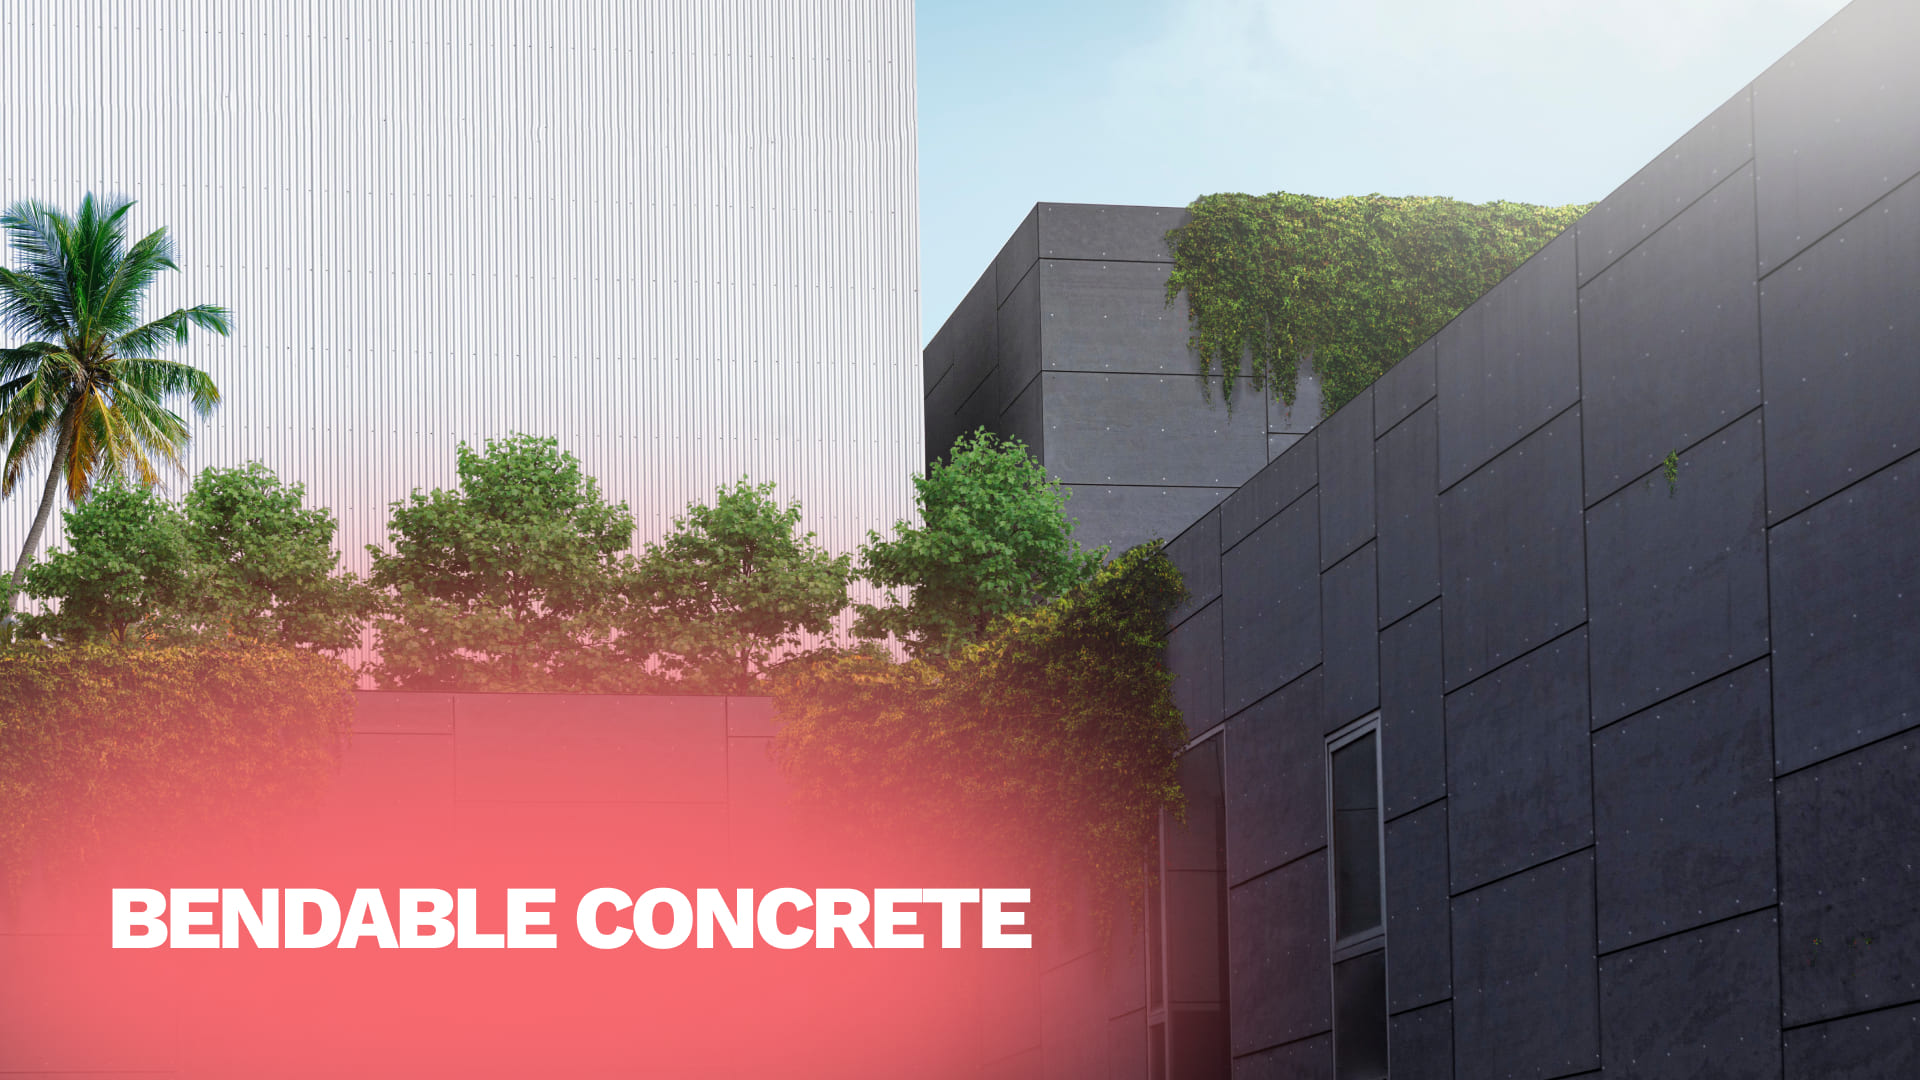 Bendable Concrete